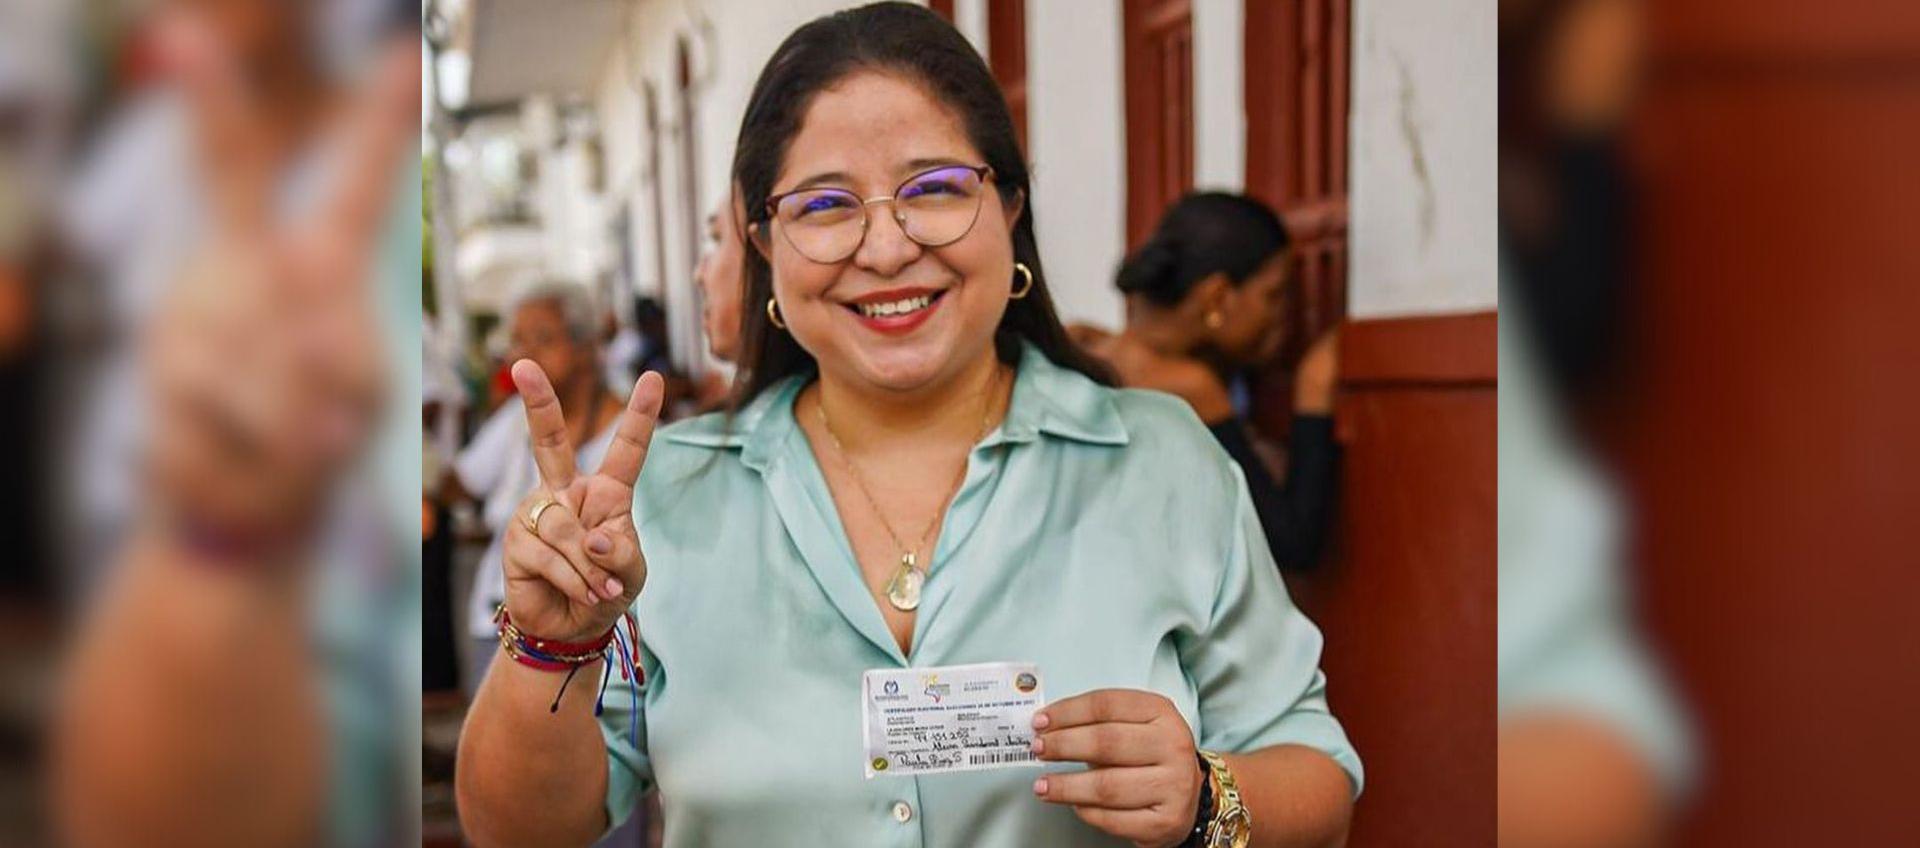 Alcira Sandoval, Alcaldesa electa de Soledad.